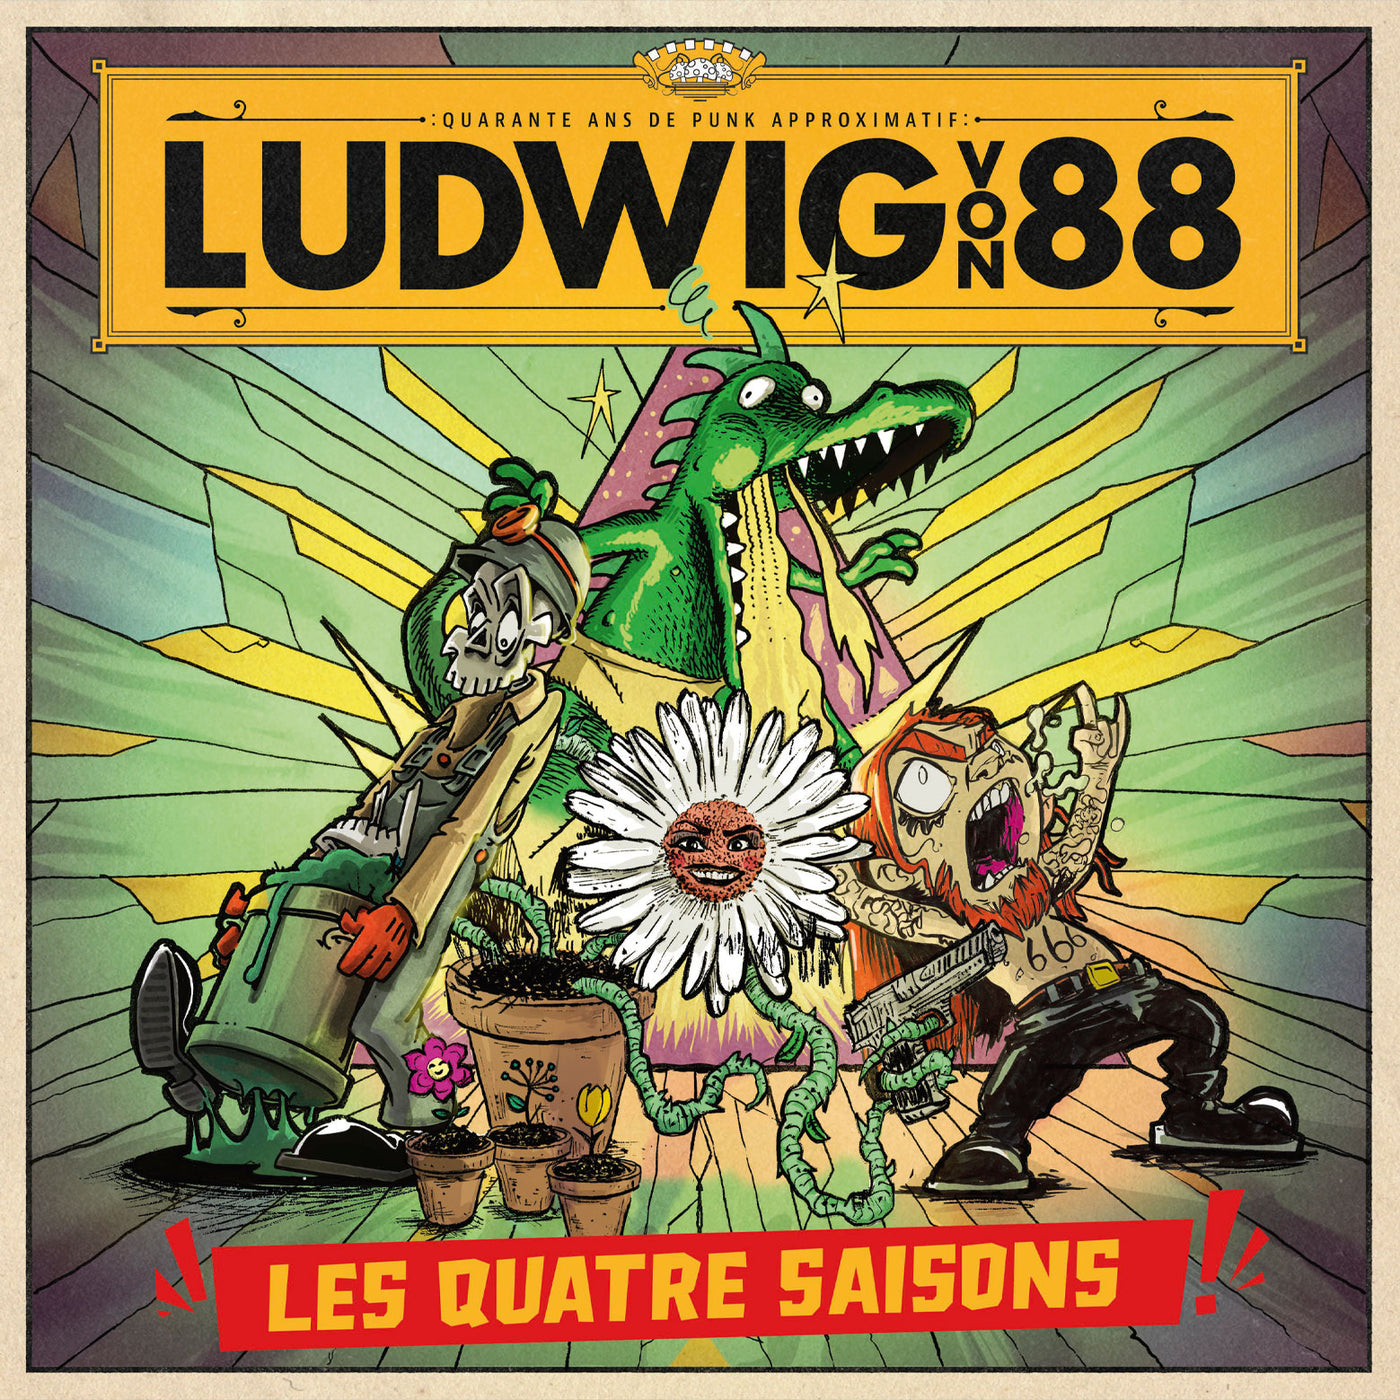 Ludwig Von 88 - Les quatre saisons [coffret CD]